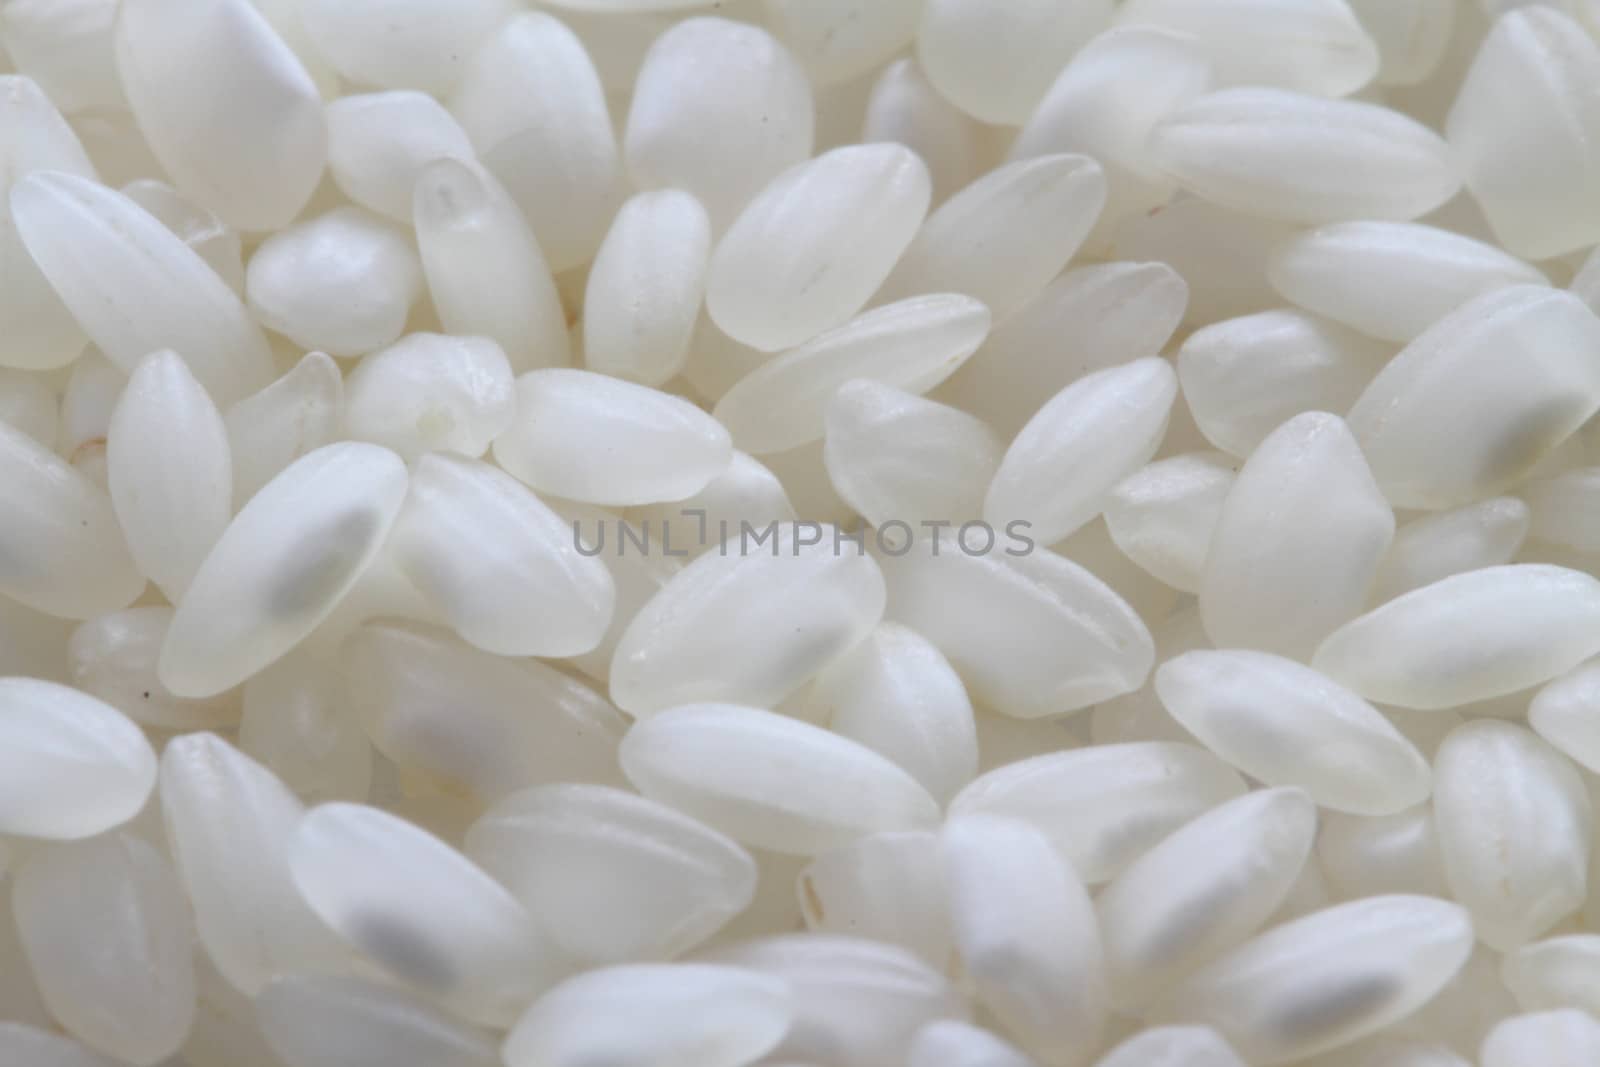 raw white rice background macro